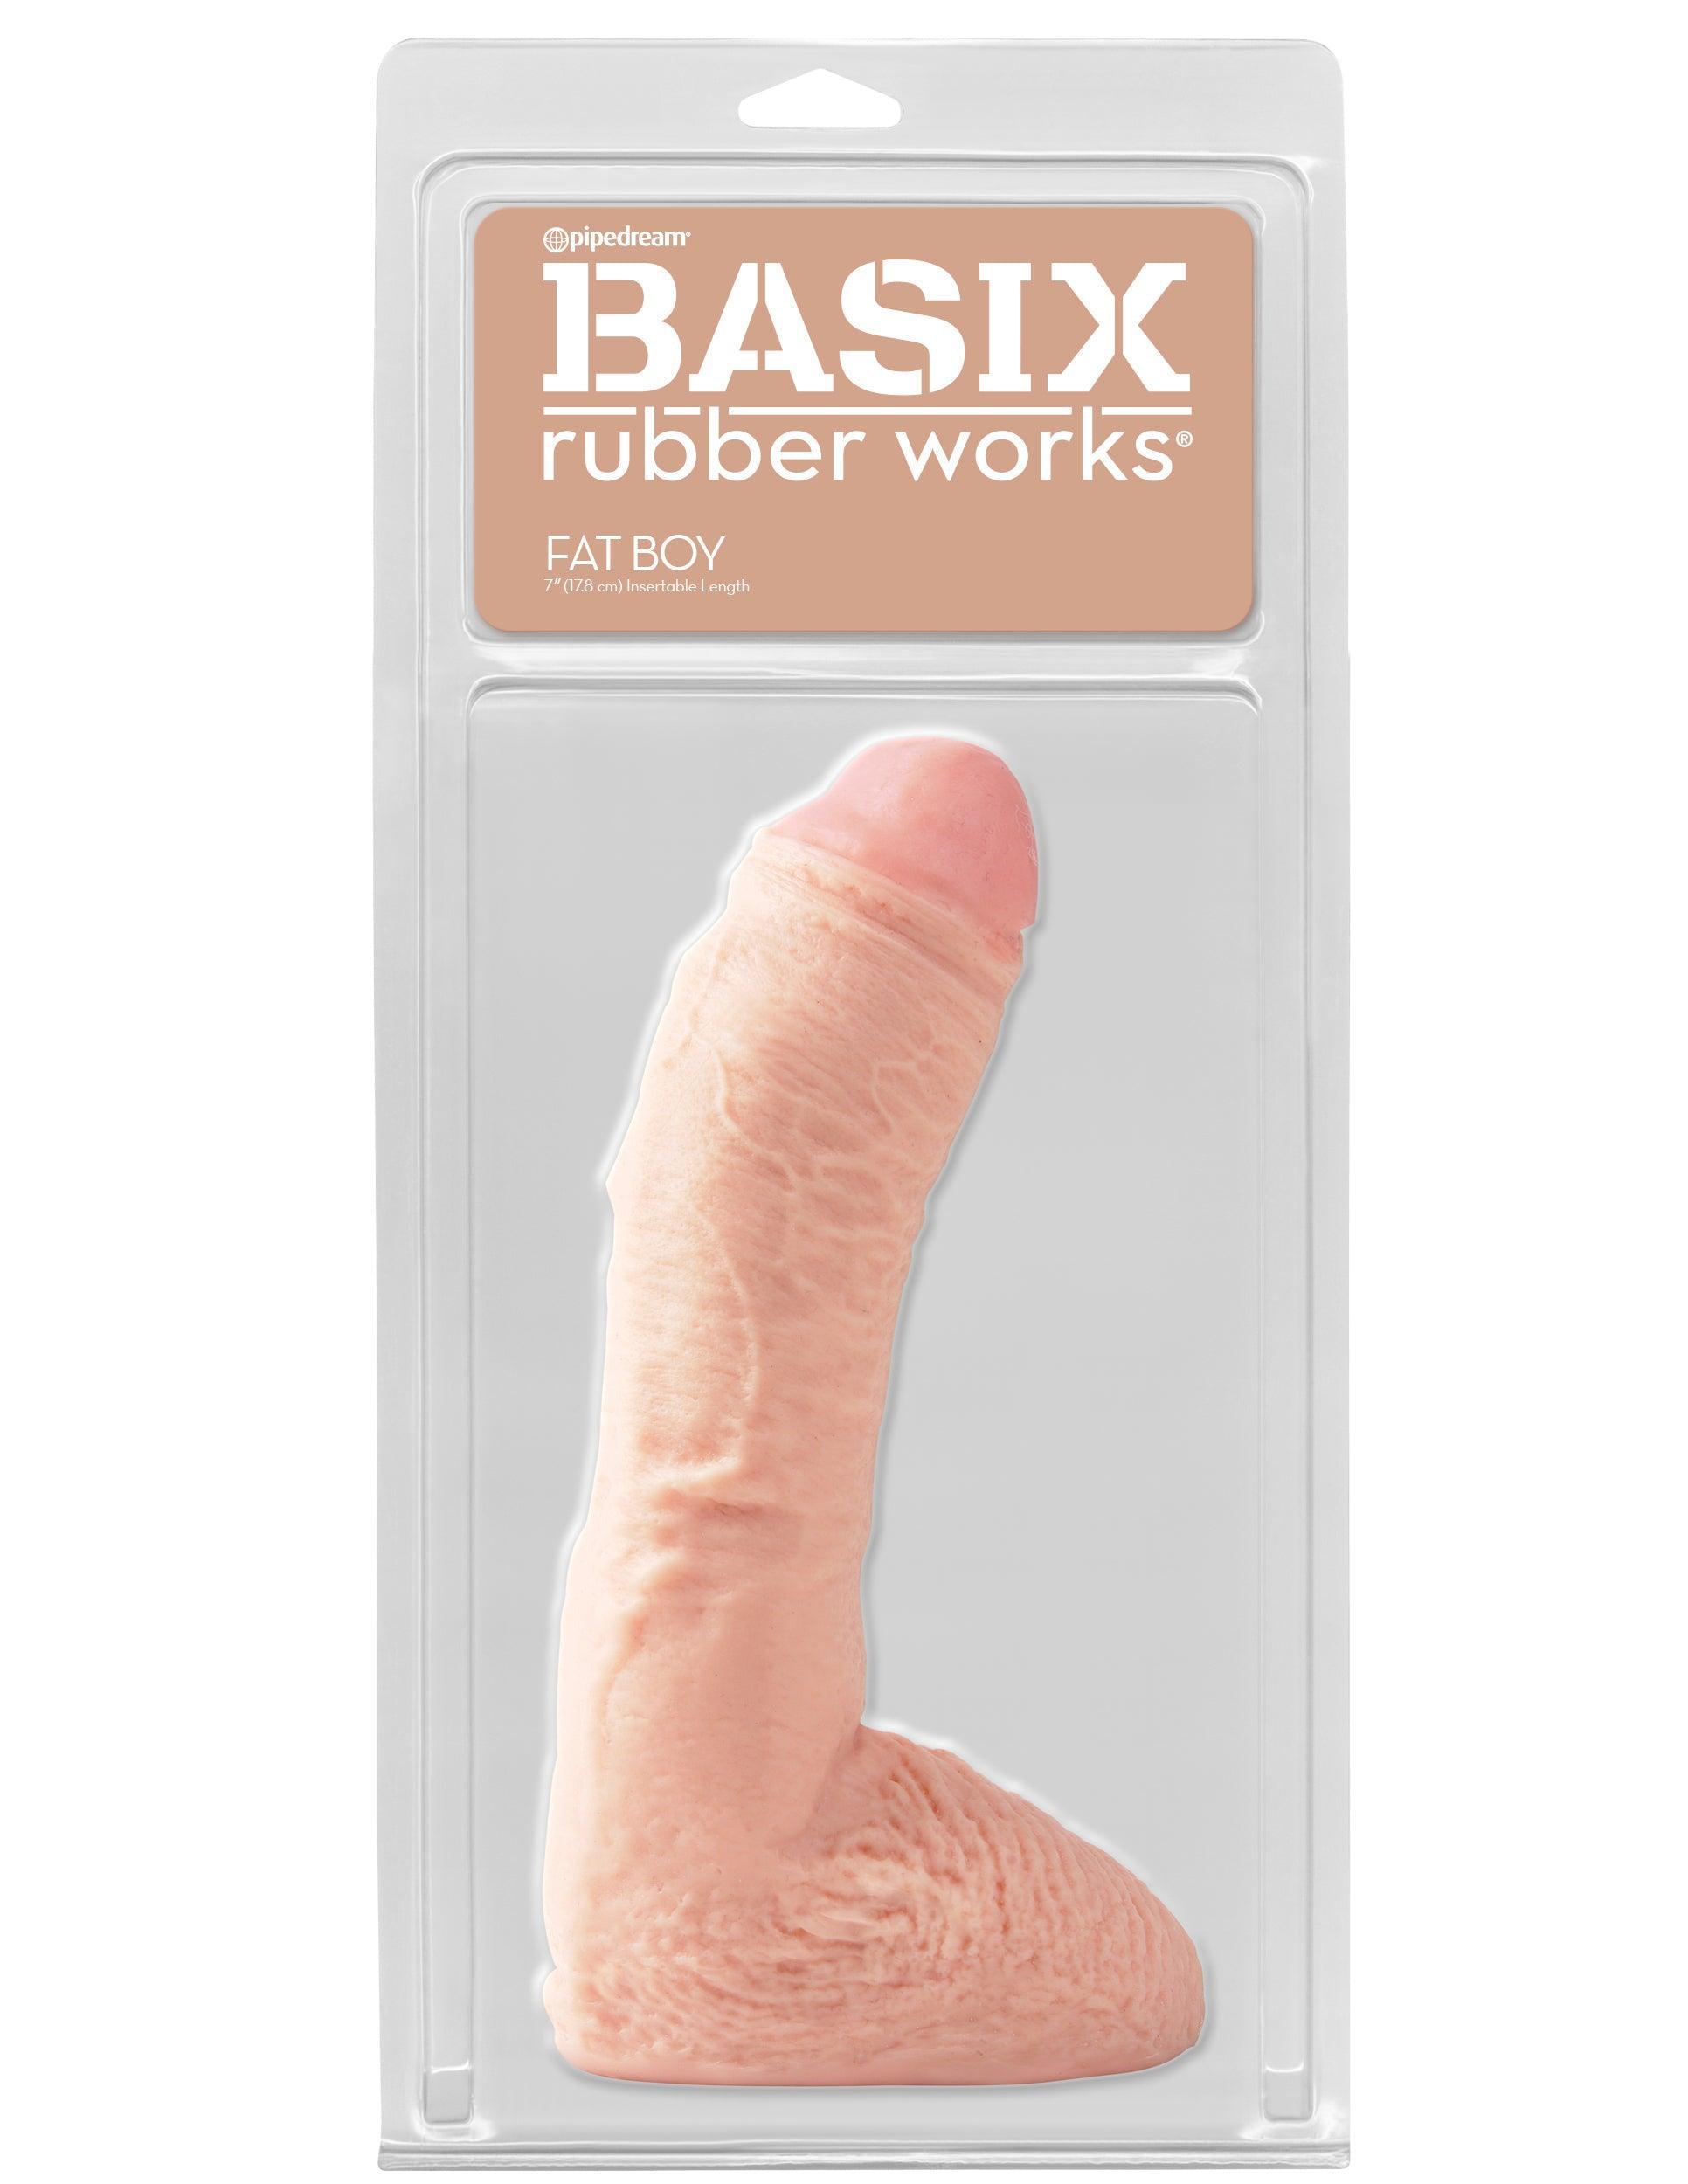 Basix Rubber Works - 10 Inch Fat Boy - Flesh - My Sex Toy Hub